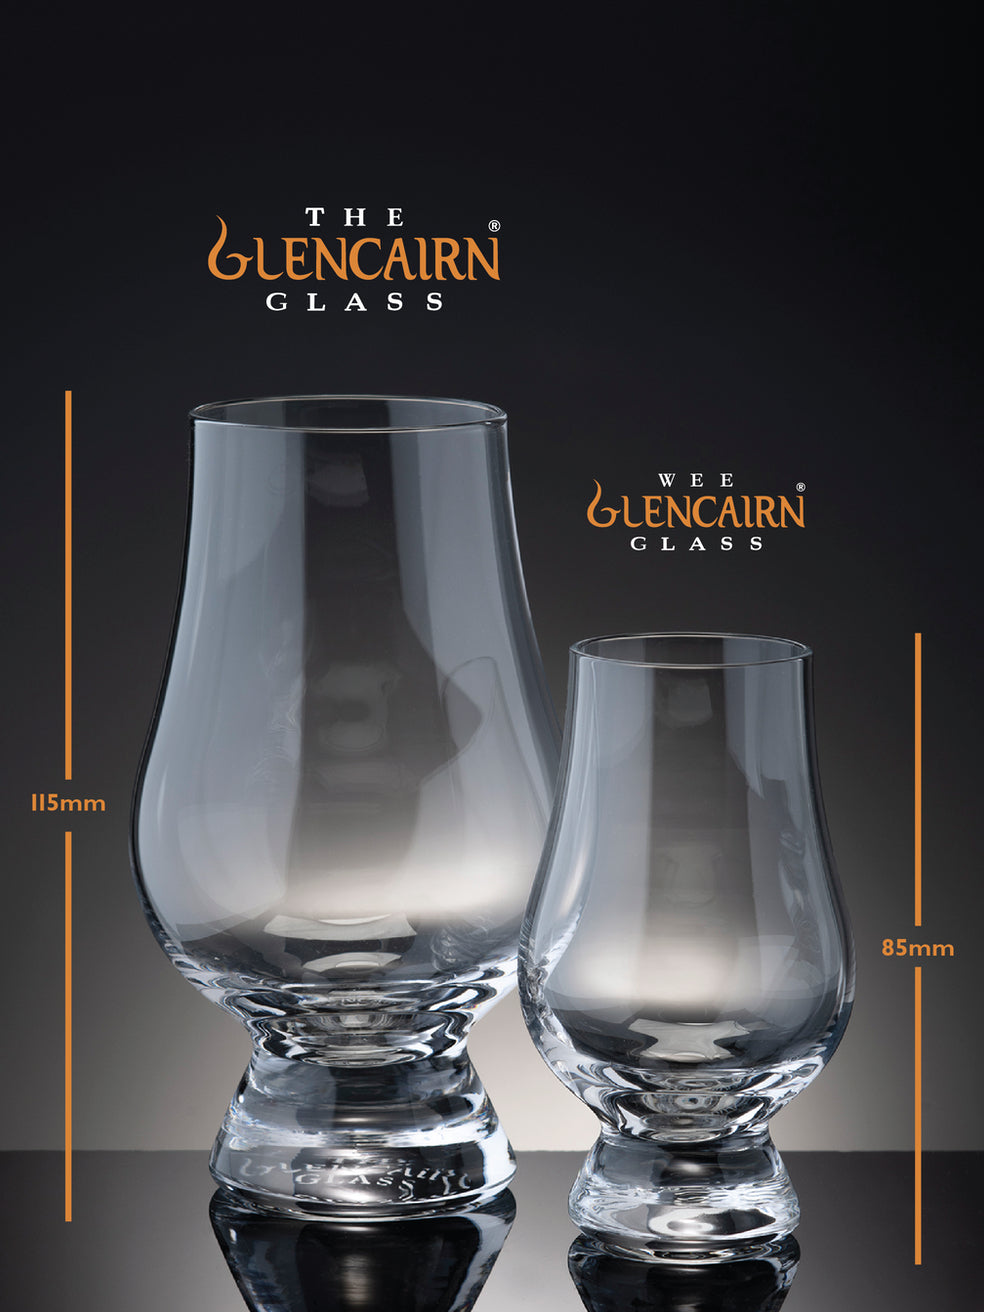 The Glencairn and Wee Glencairn Whisky Glasses